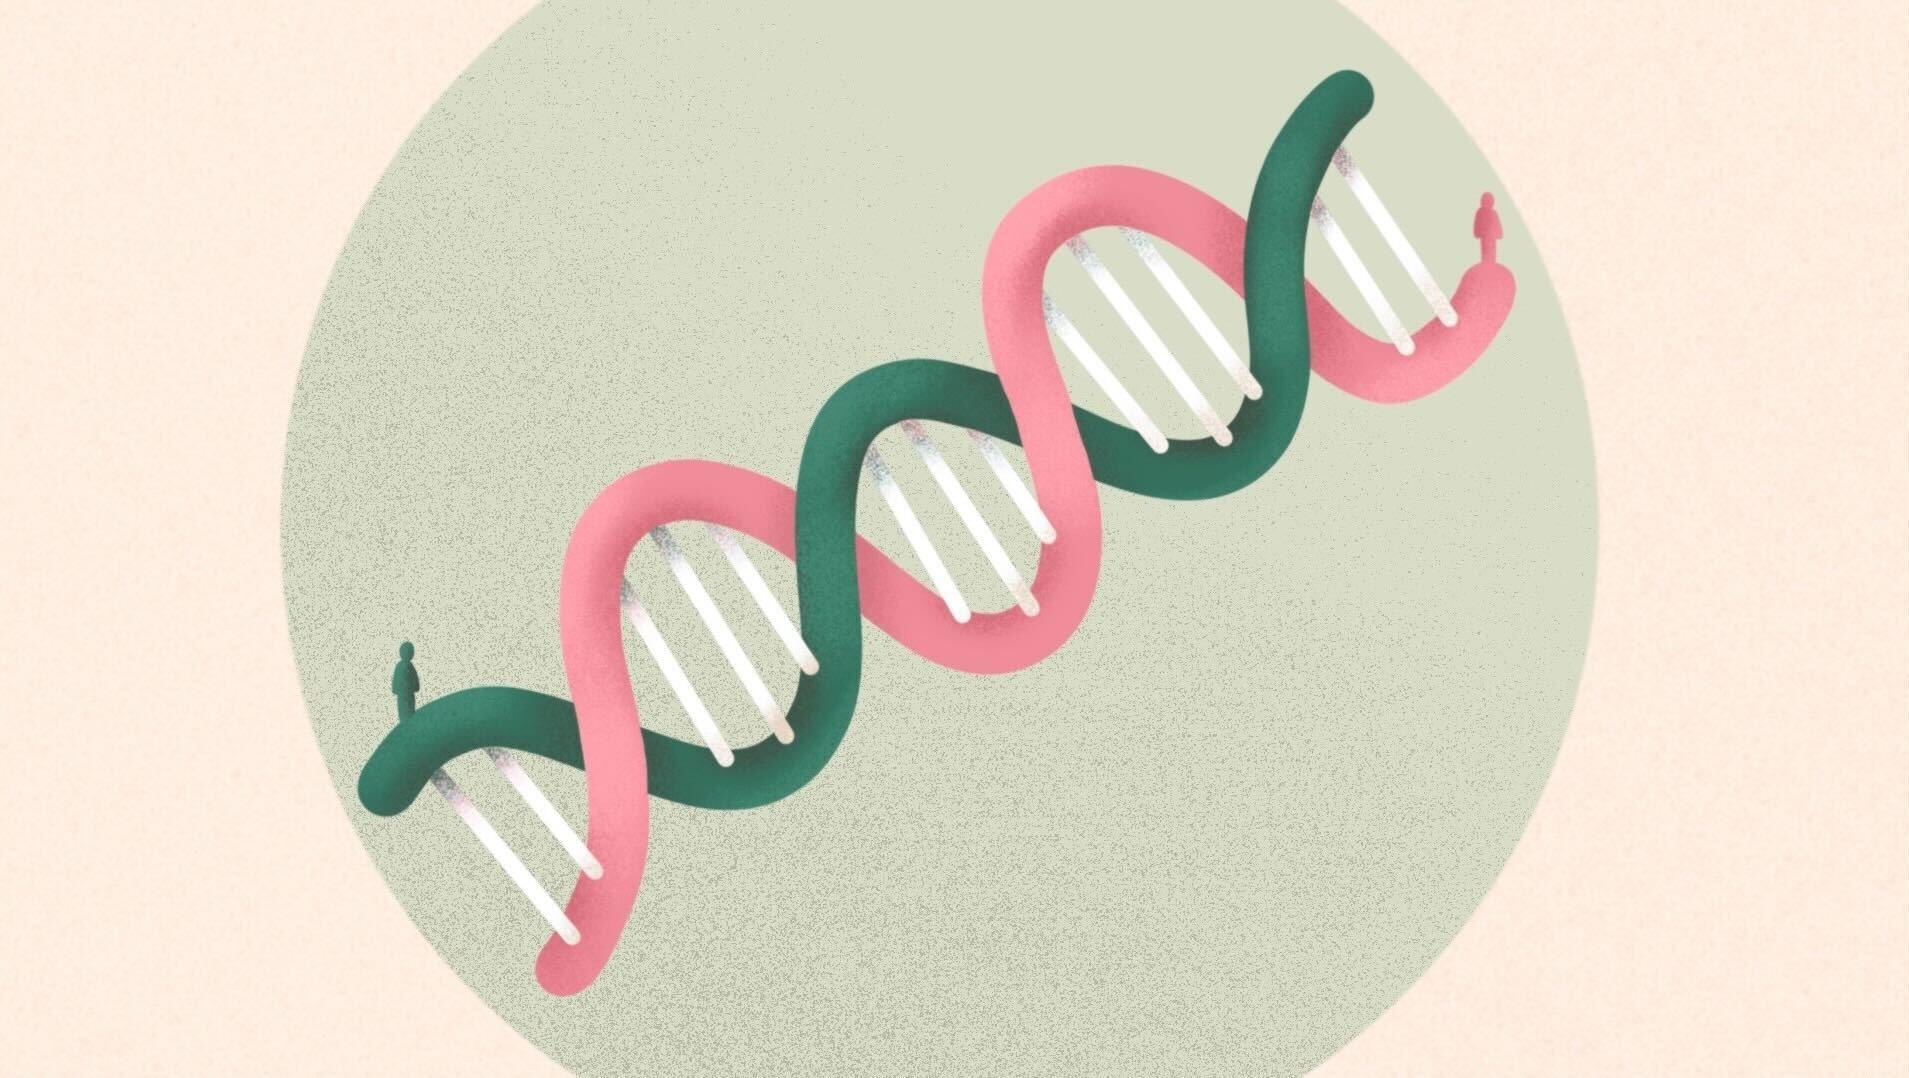 artystycznie przedstawiona helisa DNA, na której krańcach stoją ludzie